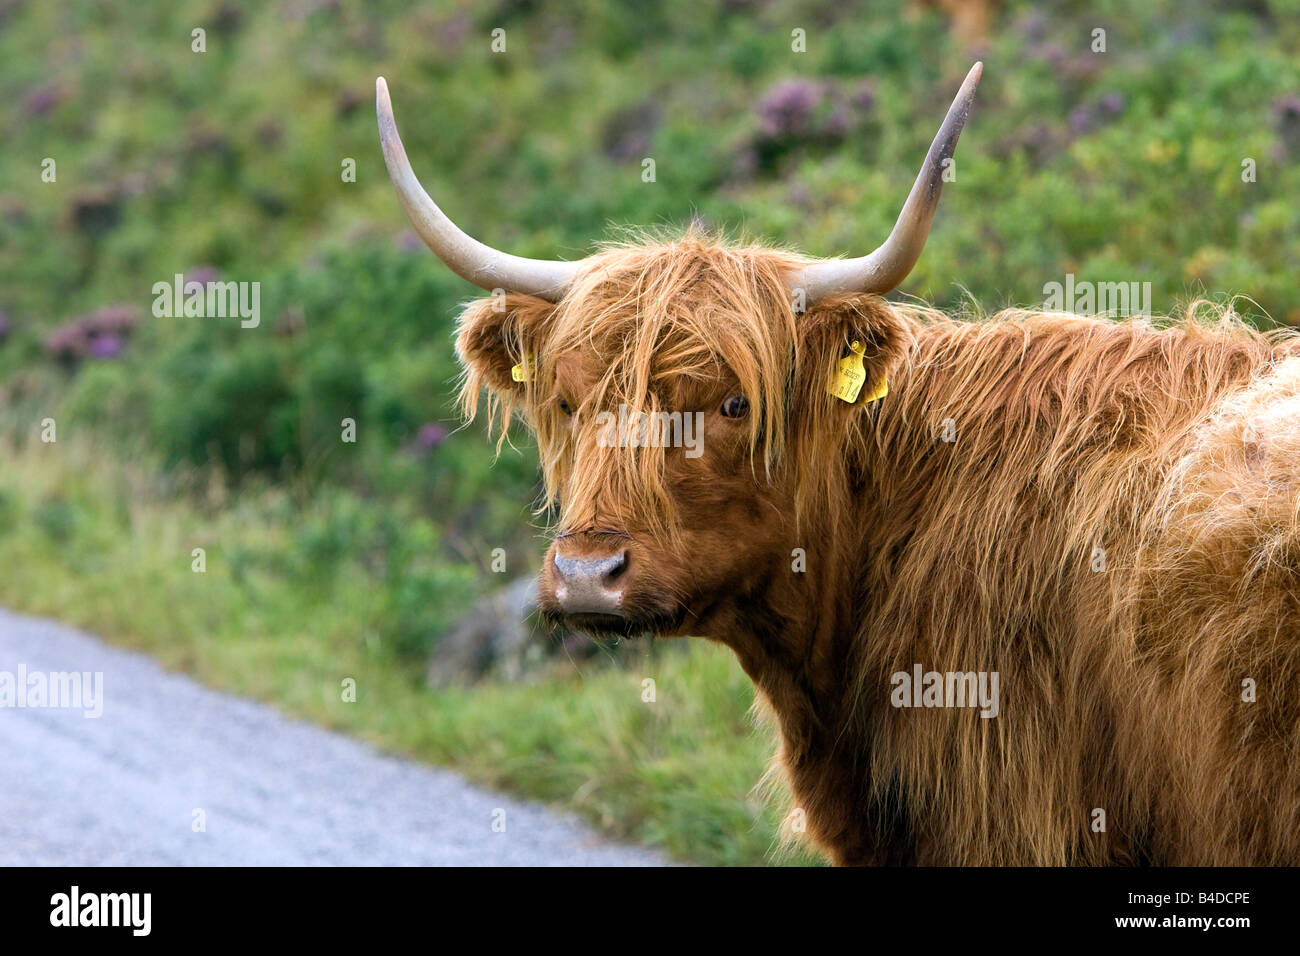 Schottisches Hochlandrind Highland Cattle Gairloch Wester Ross Scotland cow on street Stock Photo